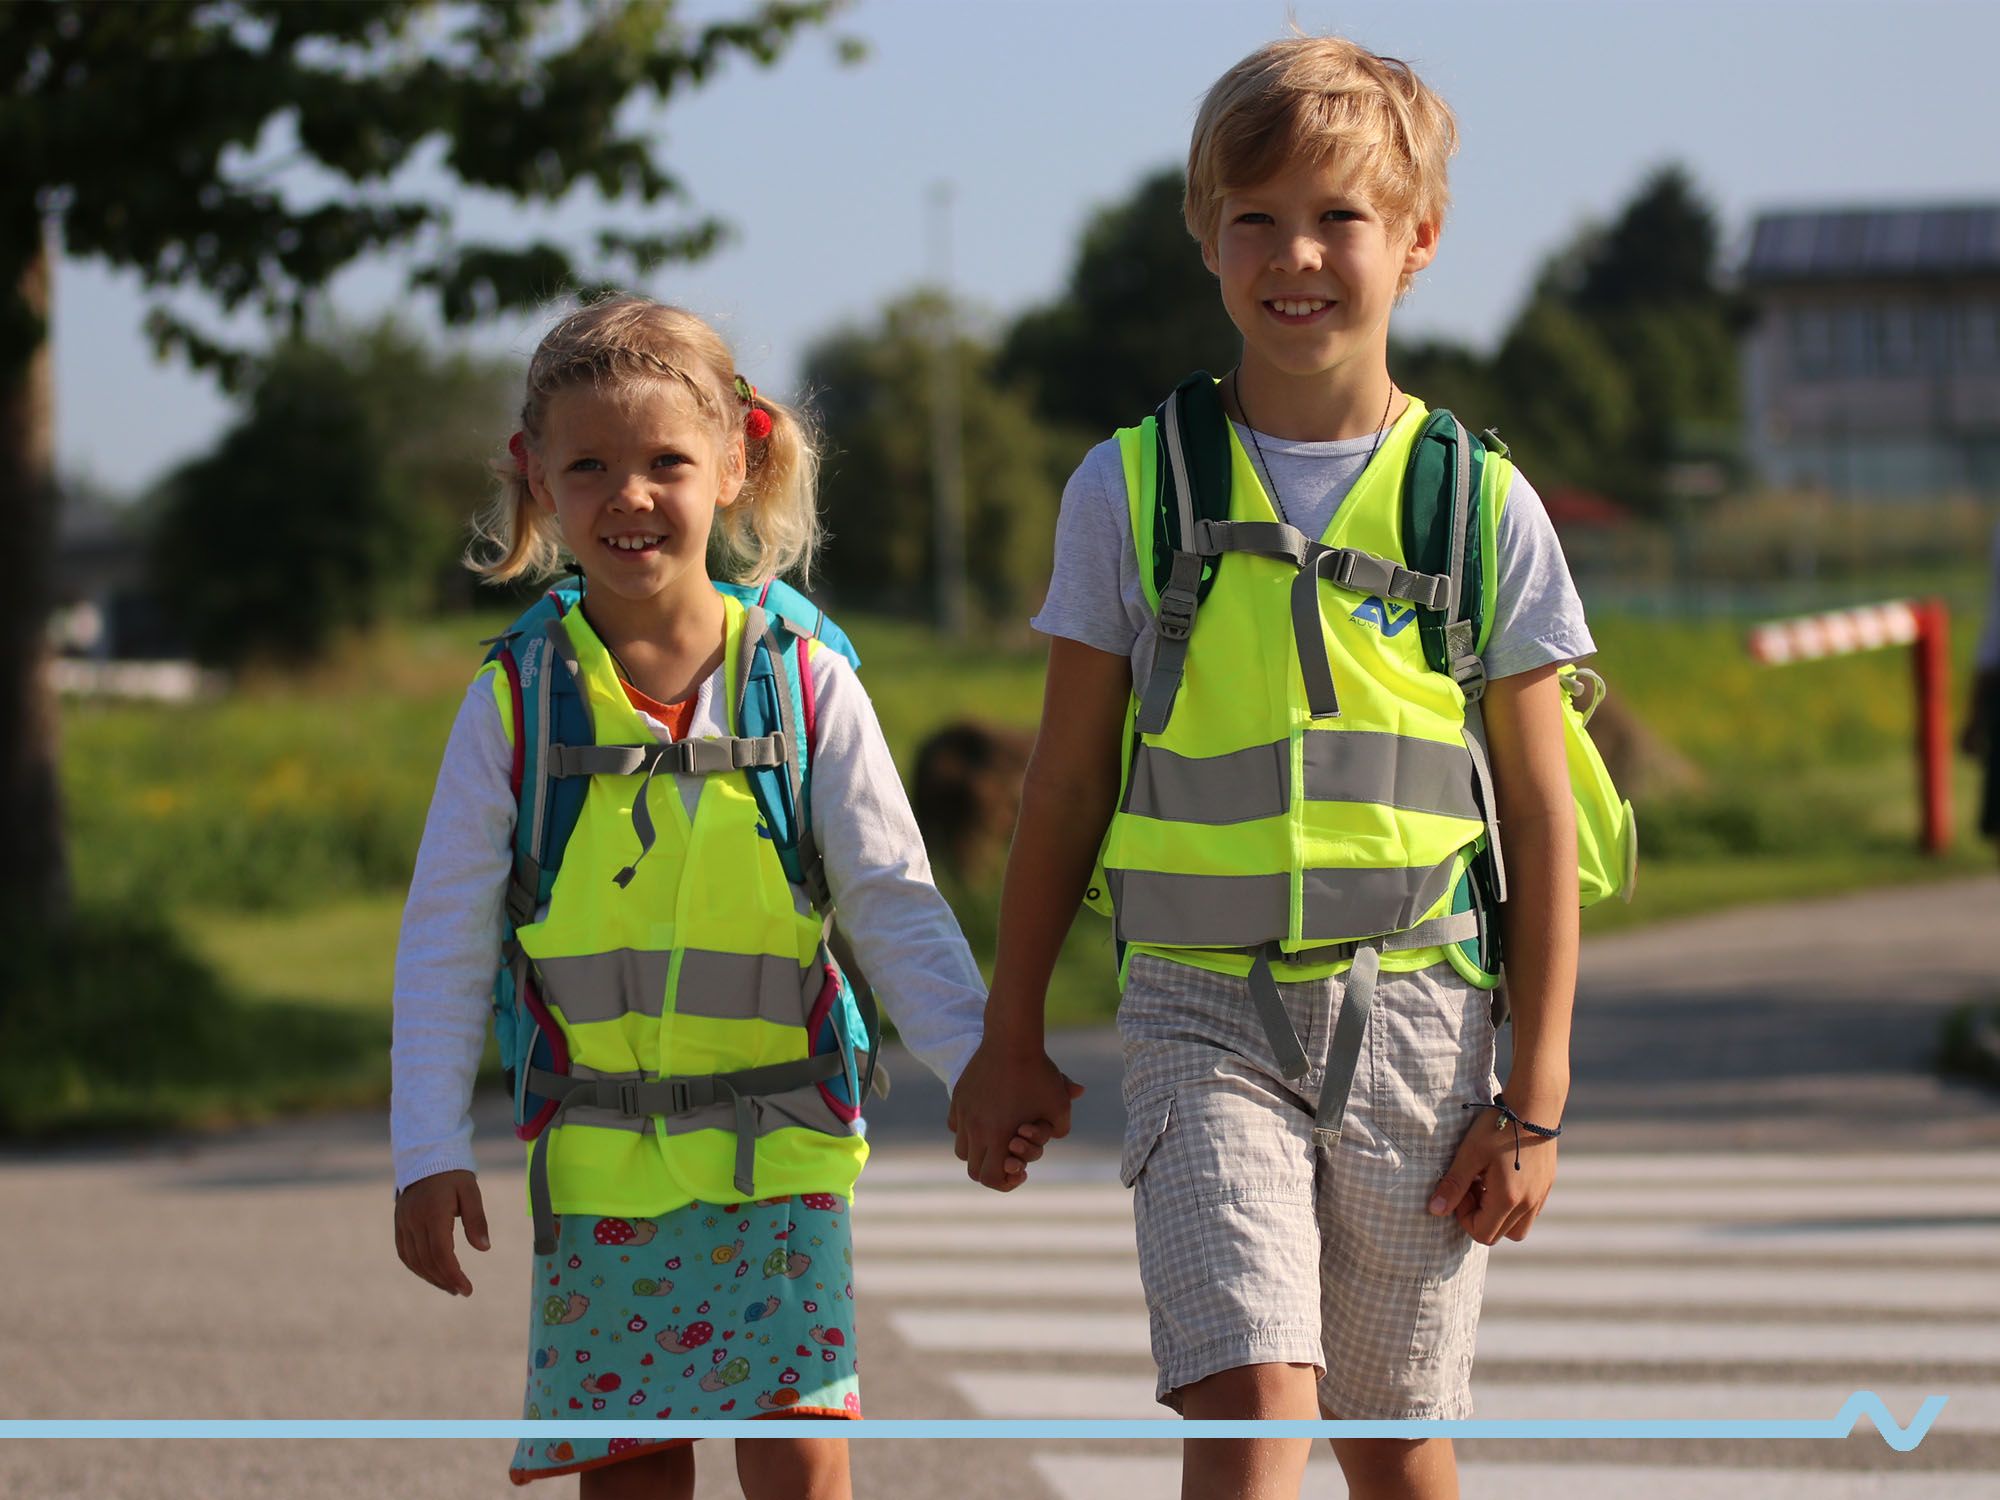 Ein Mädchen und ein Bub gehen mit Warnwesten und Schultaschen bekleidet Hand in Hand zur Schule